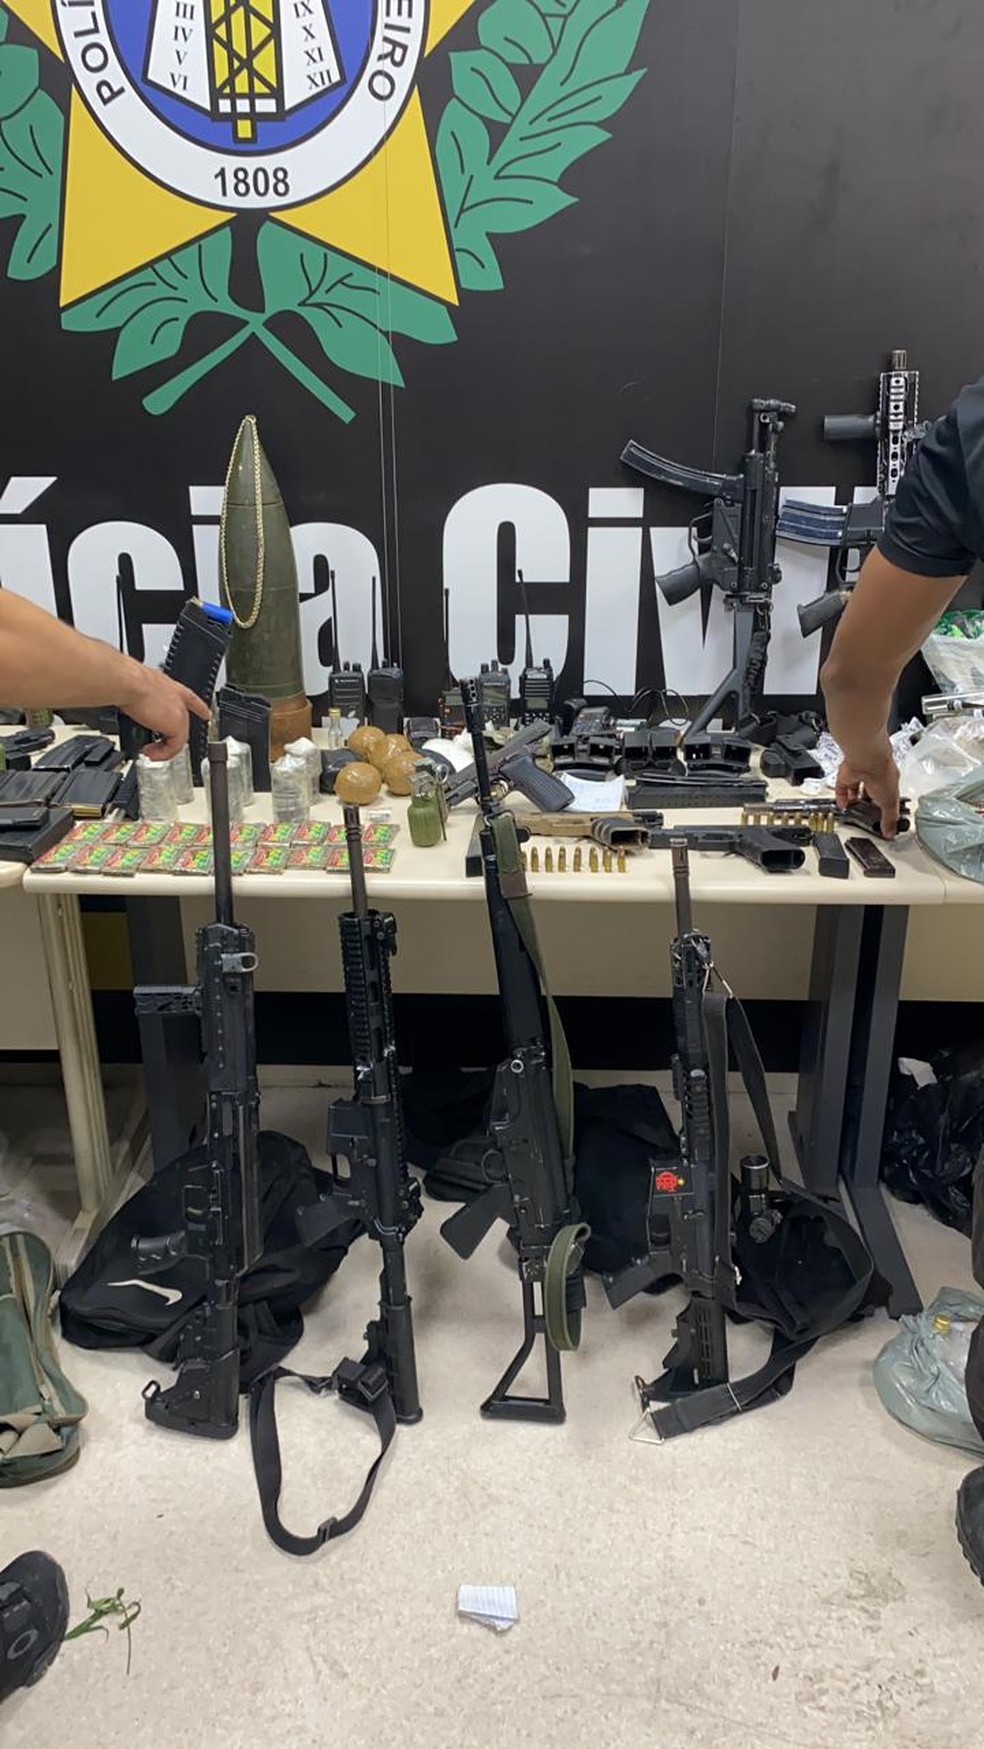 Polícia apresenta armas e munições apreendidas em operação no Jacarezinho — Foto: Divulgação